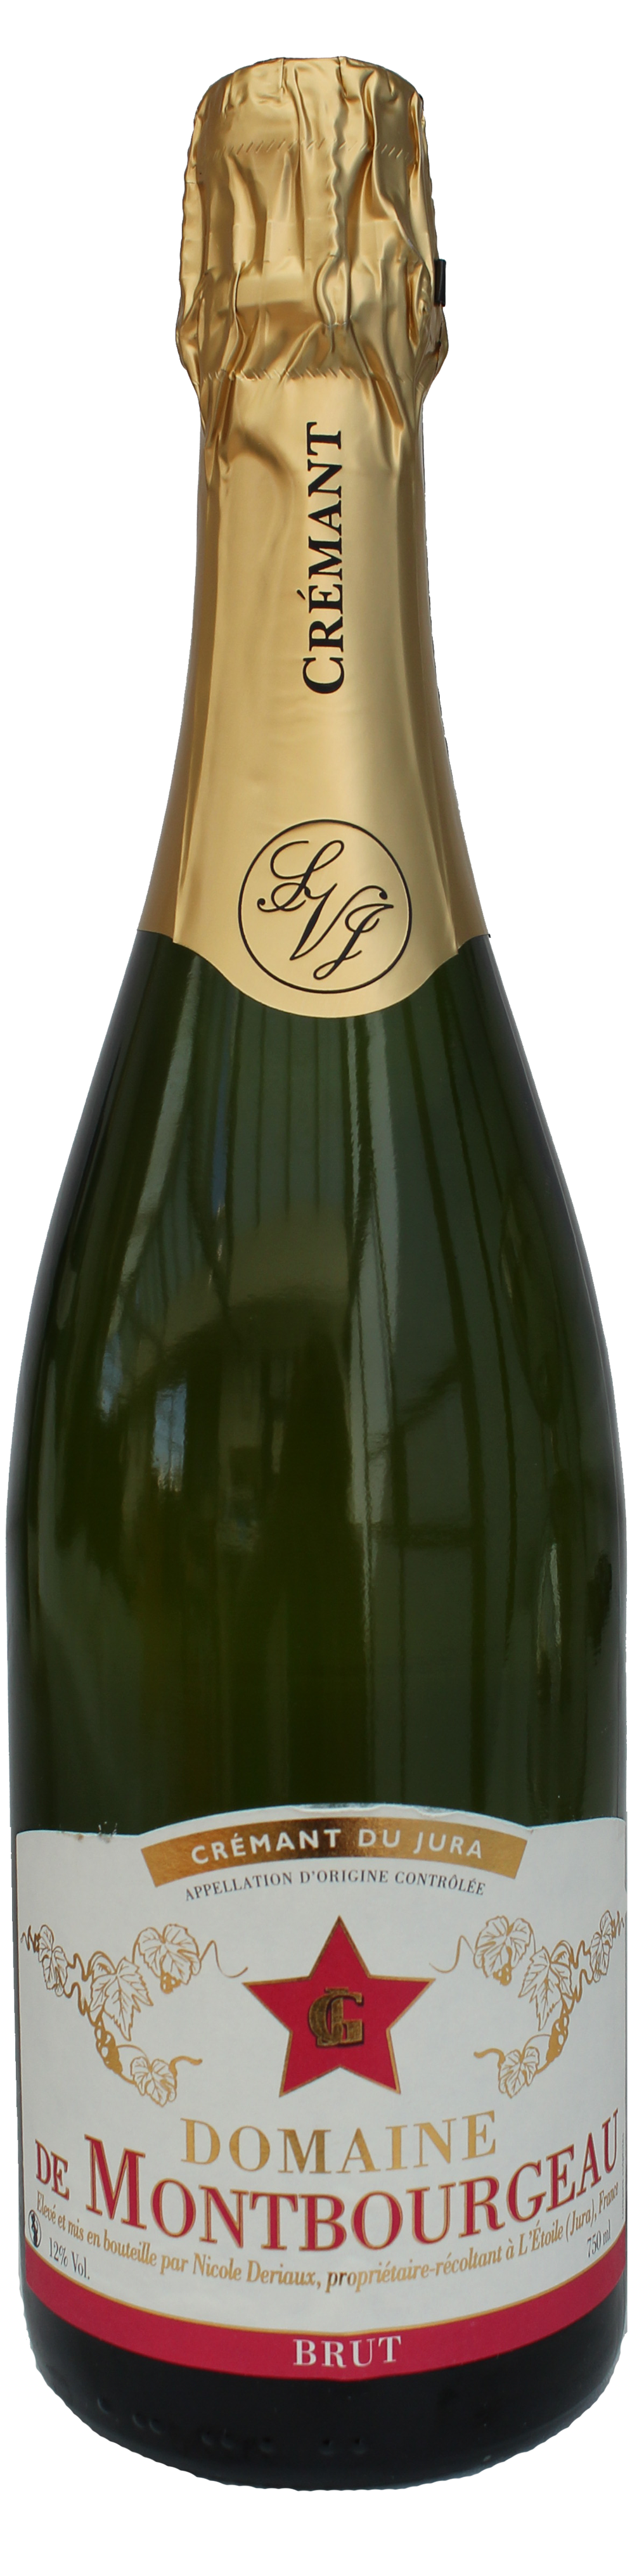 Bottle shot of Cremant du Jura